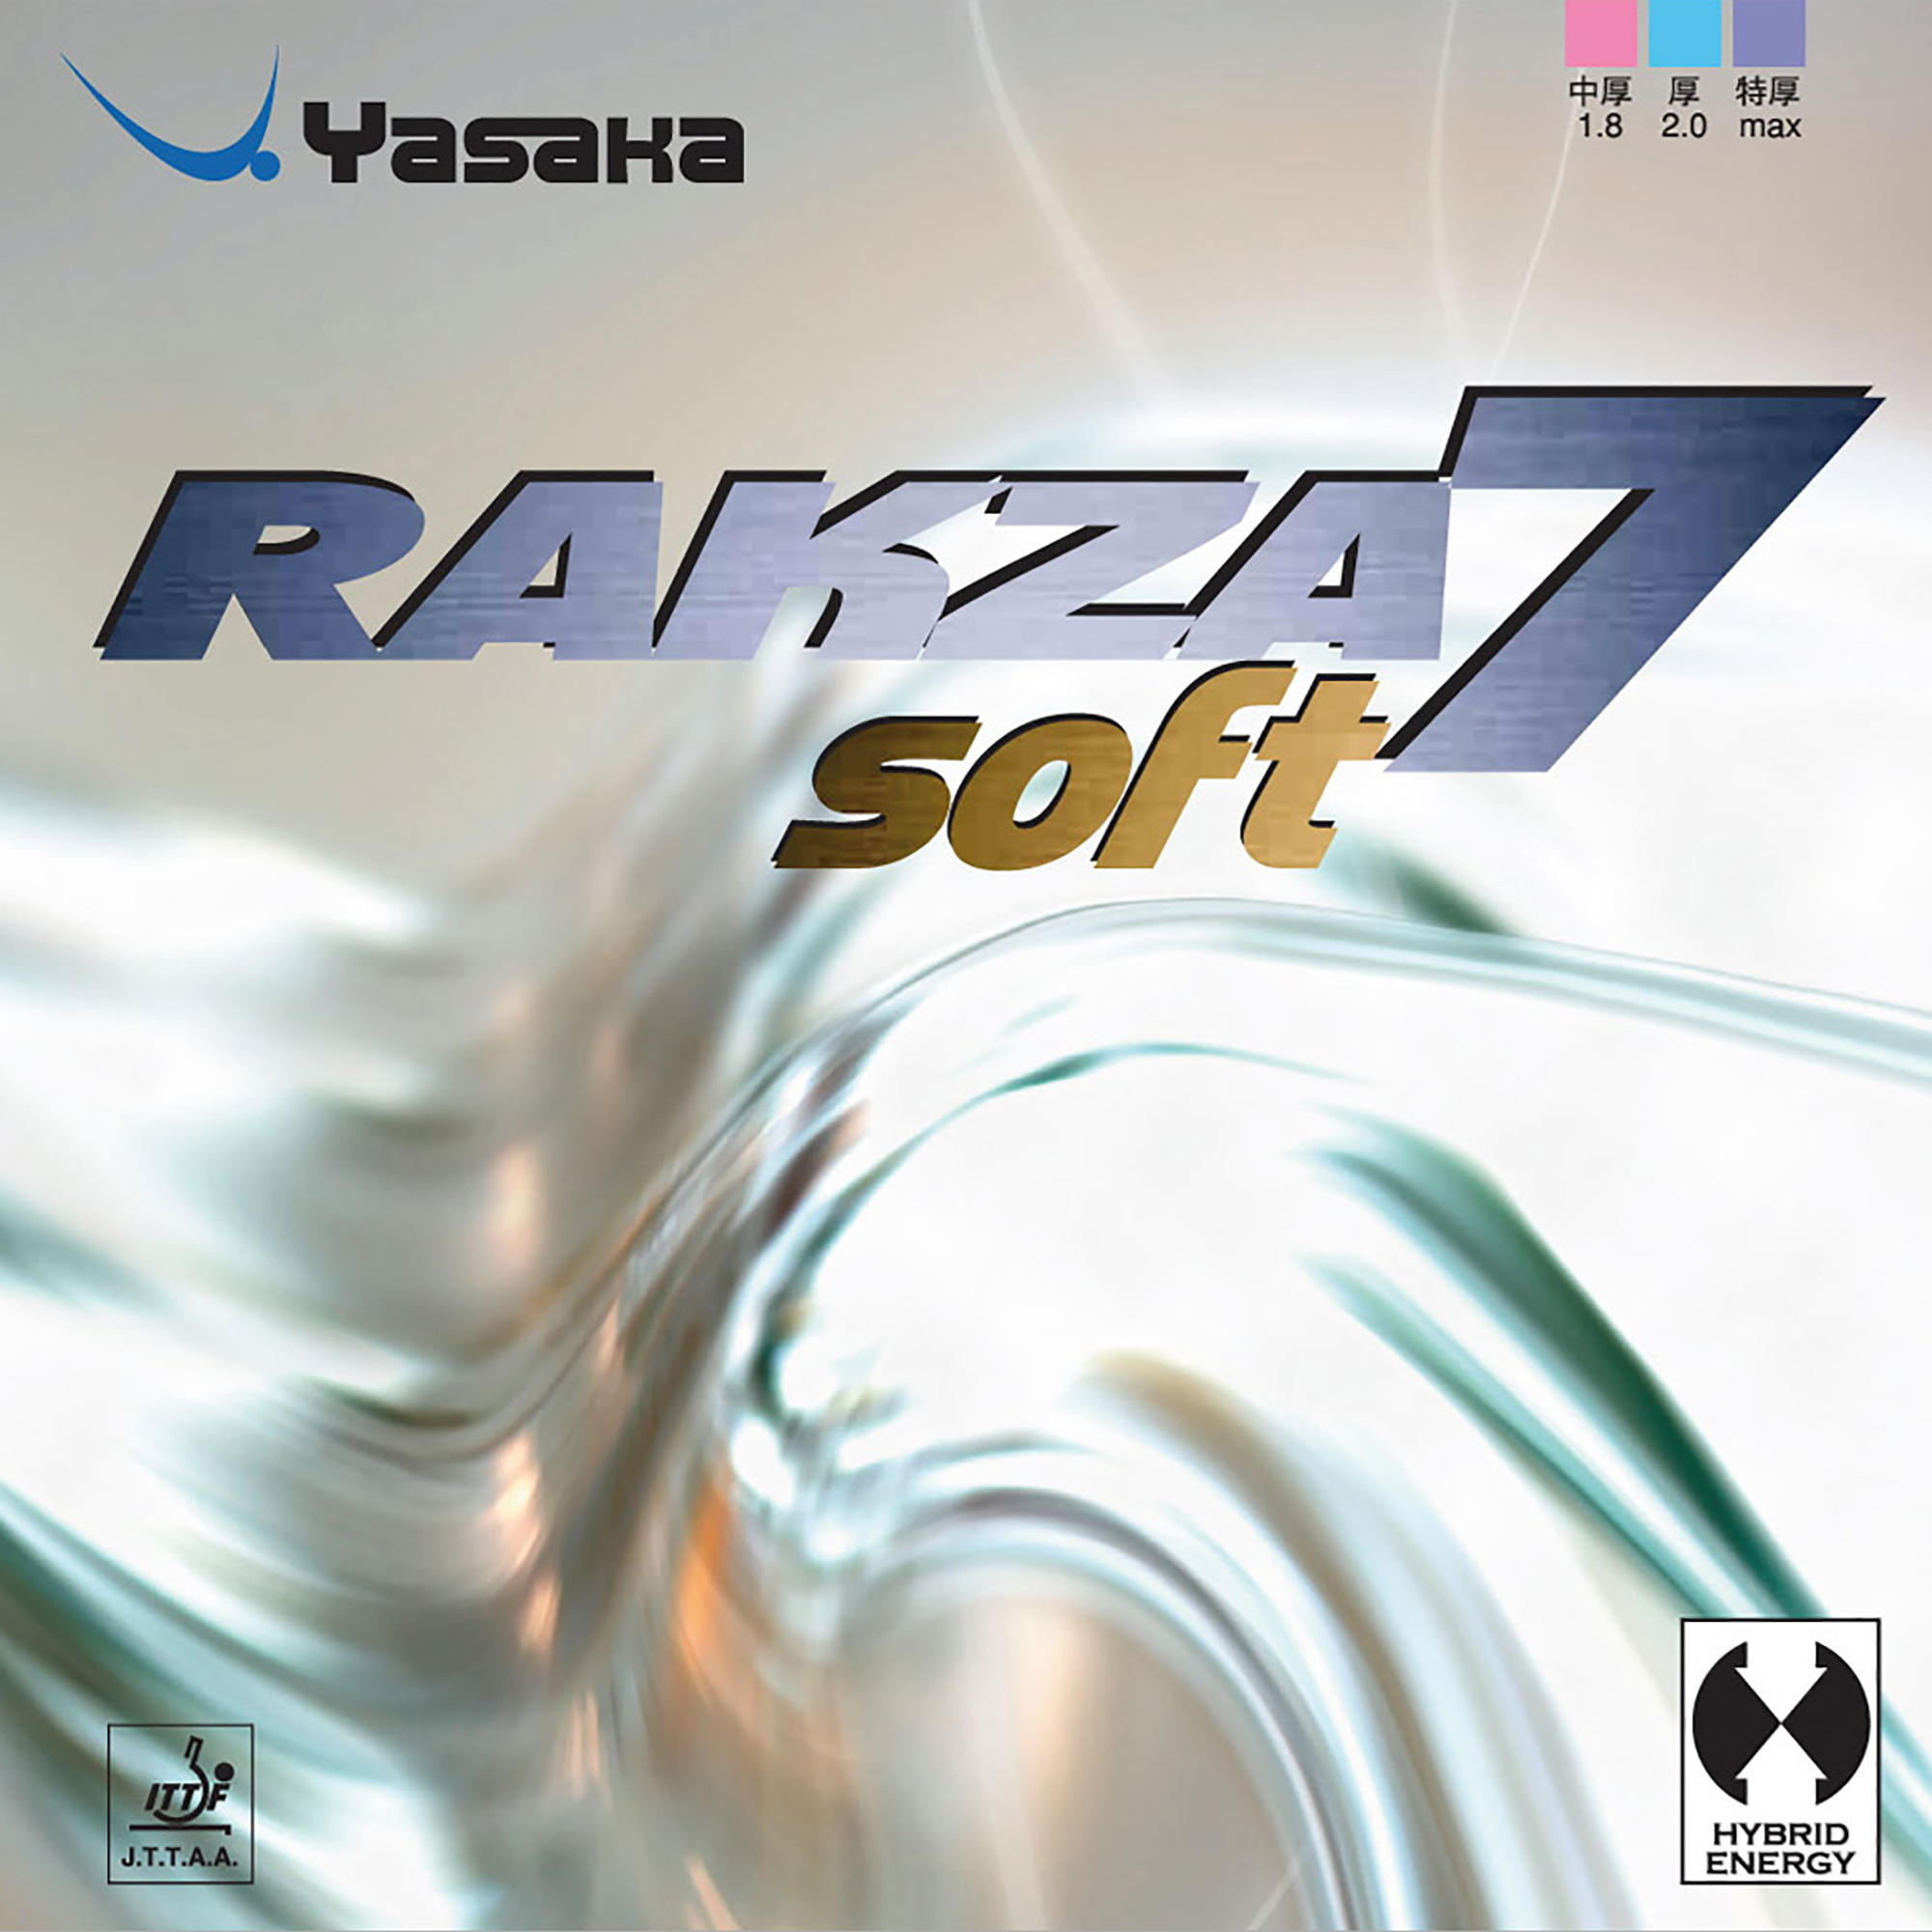 Față Paletă Tenis de Masă Rakza 7 Soft decathlon.ro imagine 2022